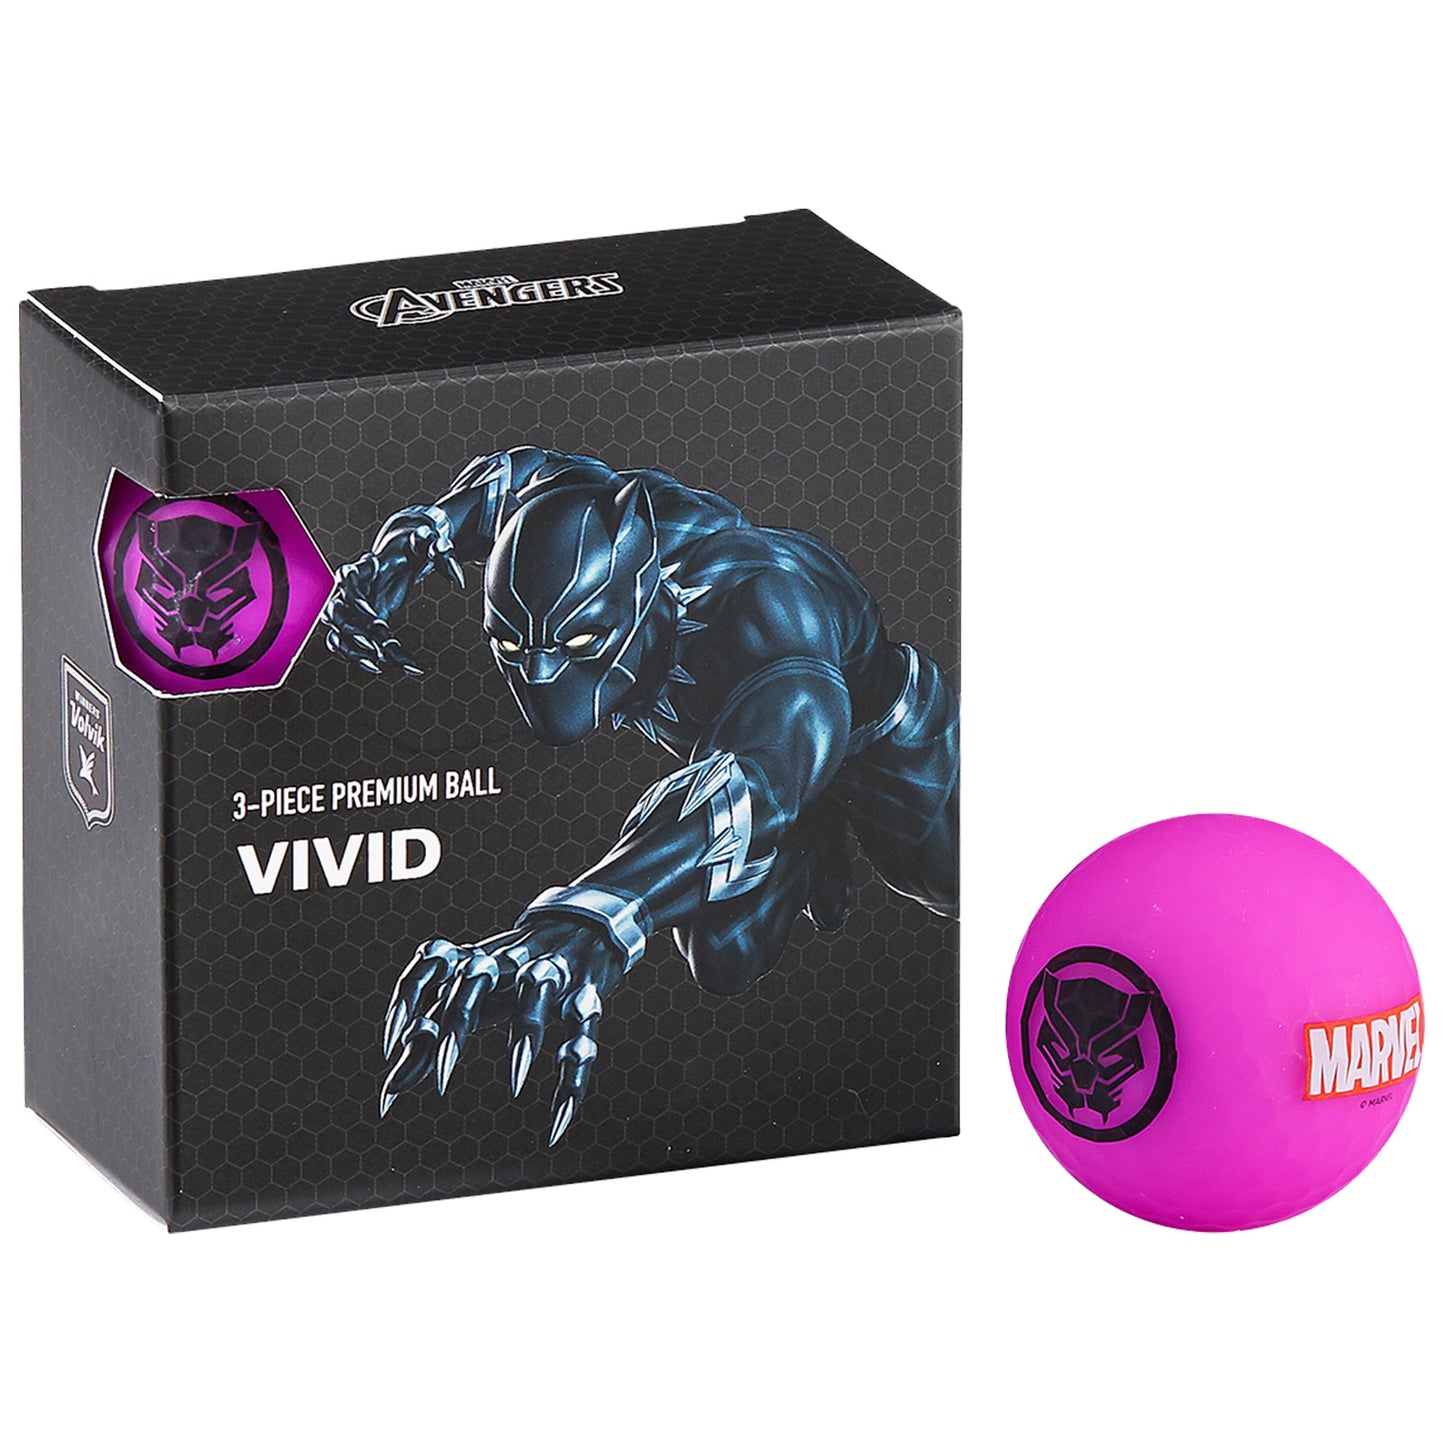 Volvik x Marvel Vivid 4 Ball Packs